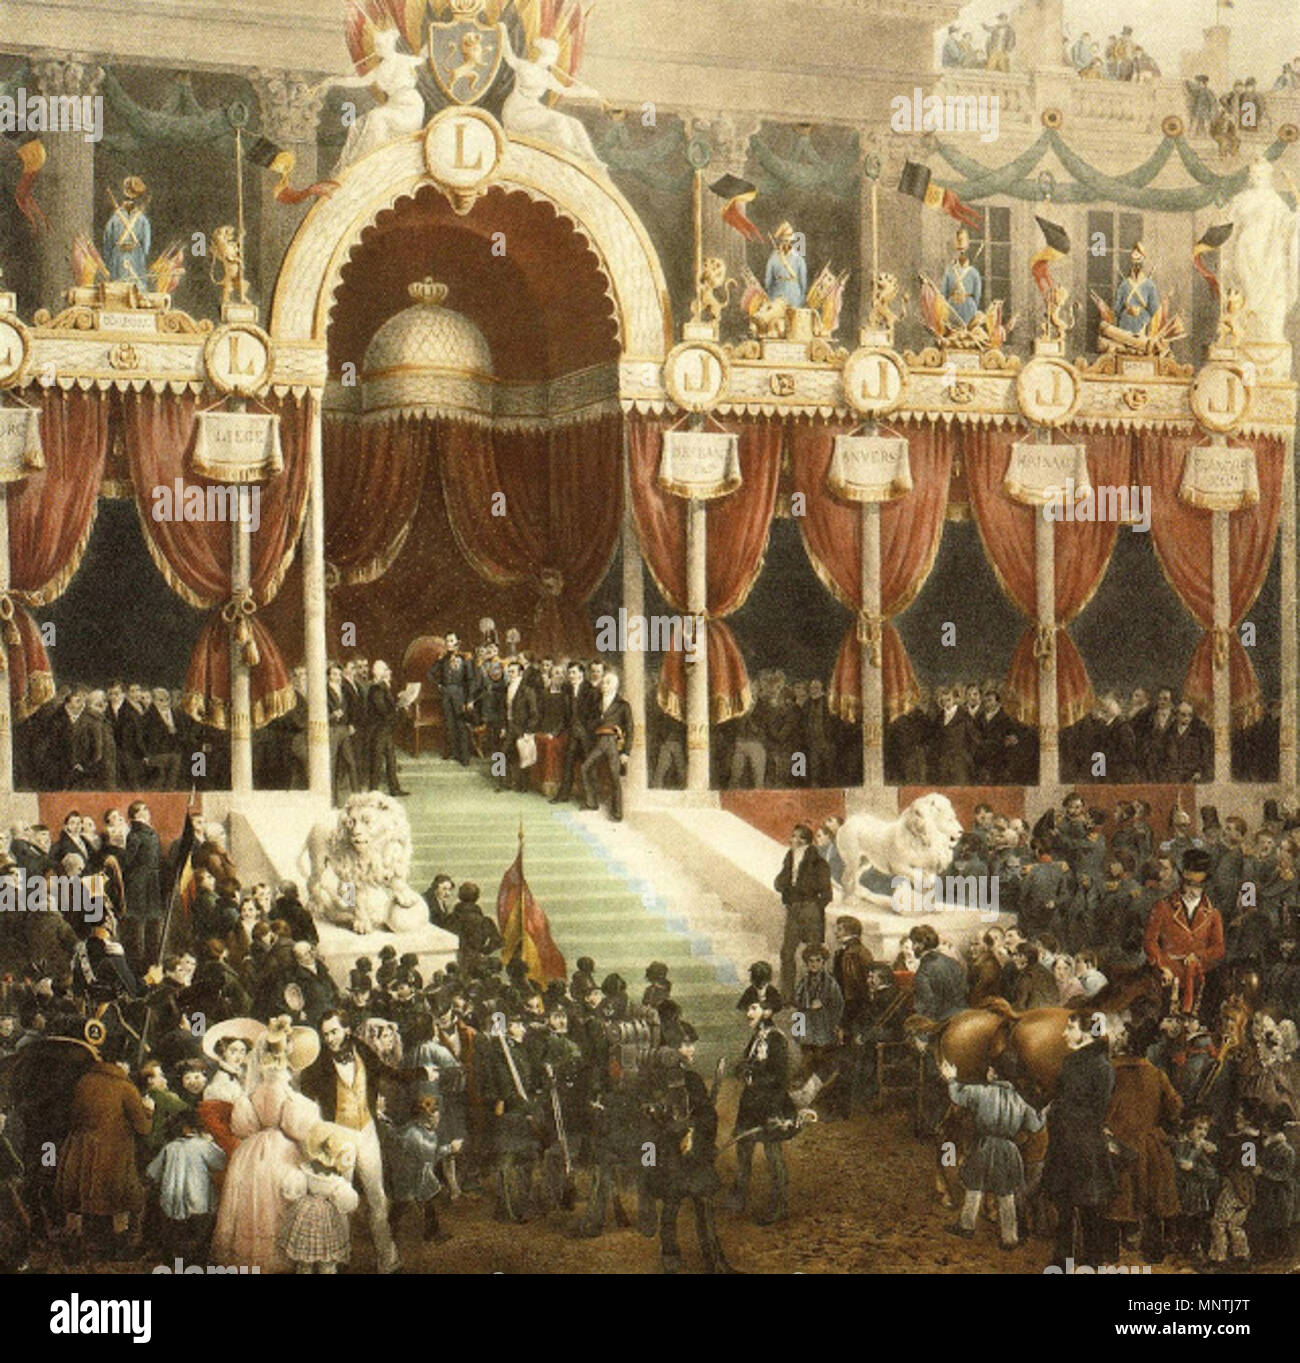 1027 Prestation de serment du roi Léopold Ier Stock Photo